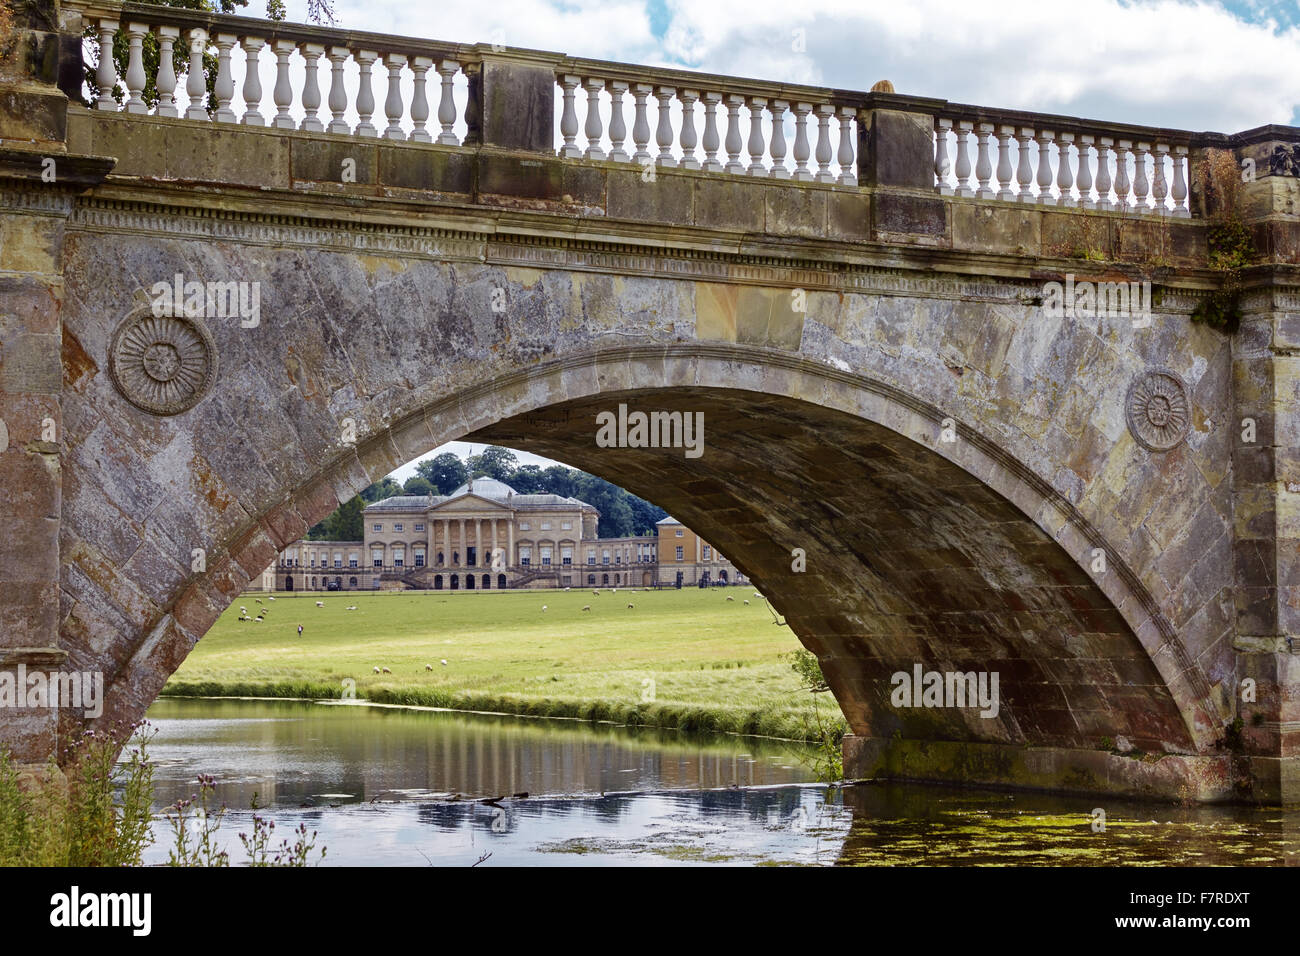 Eine Brücke in Kedleston Hall, Derbyshire. Kedleston ist eines der größten und vollkommensten fertigen aller Eigenschaften, die von Robert Adam entworfen. Stockfoto